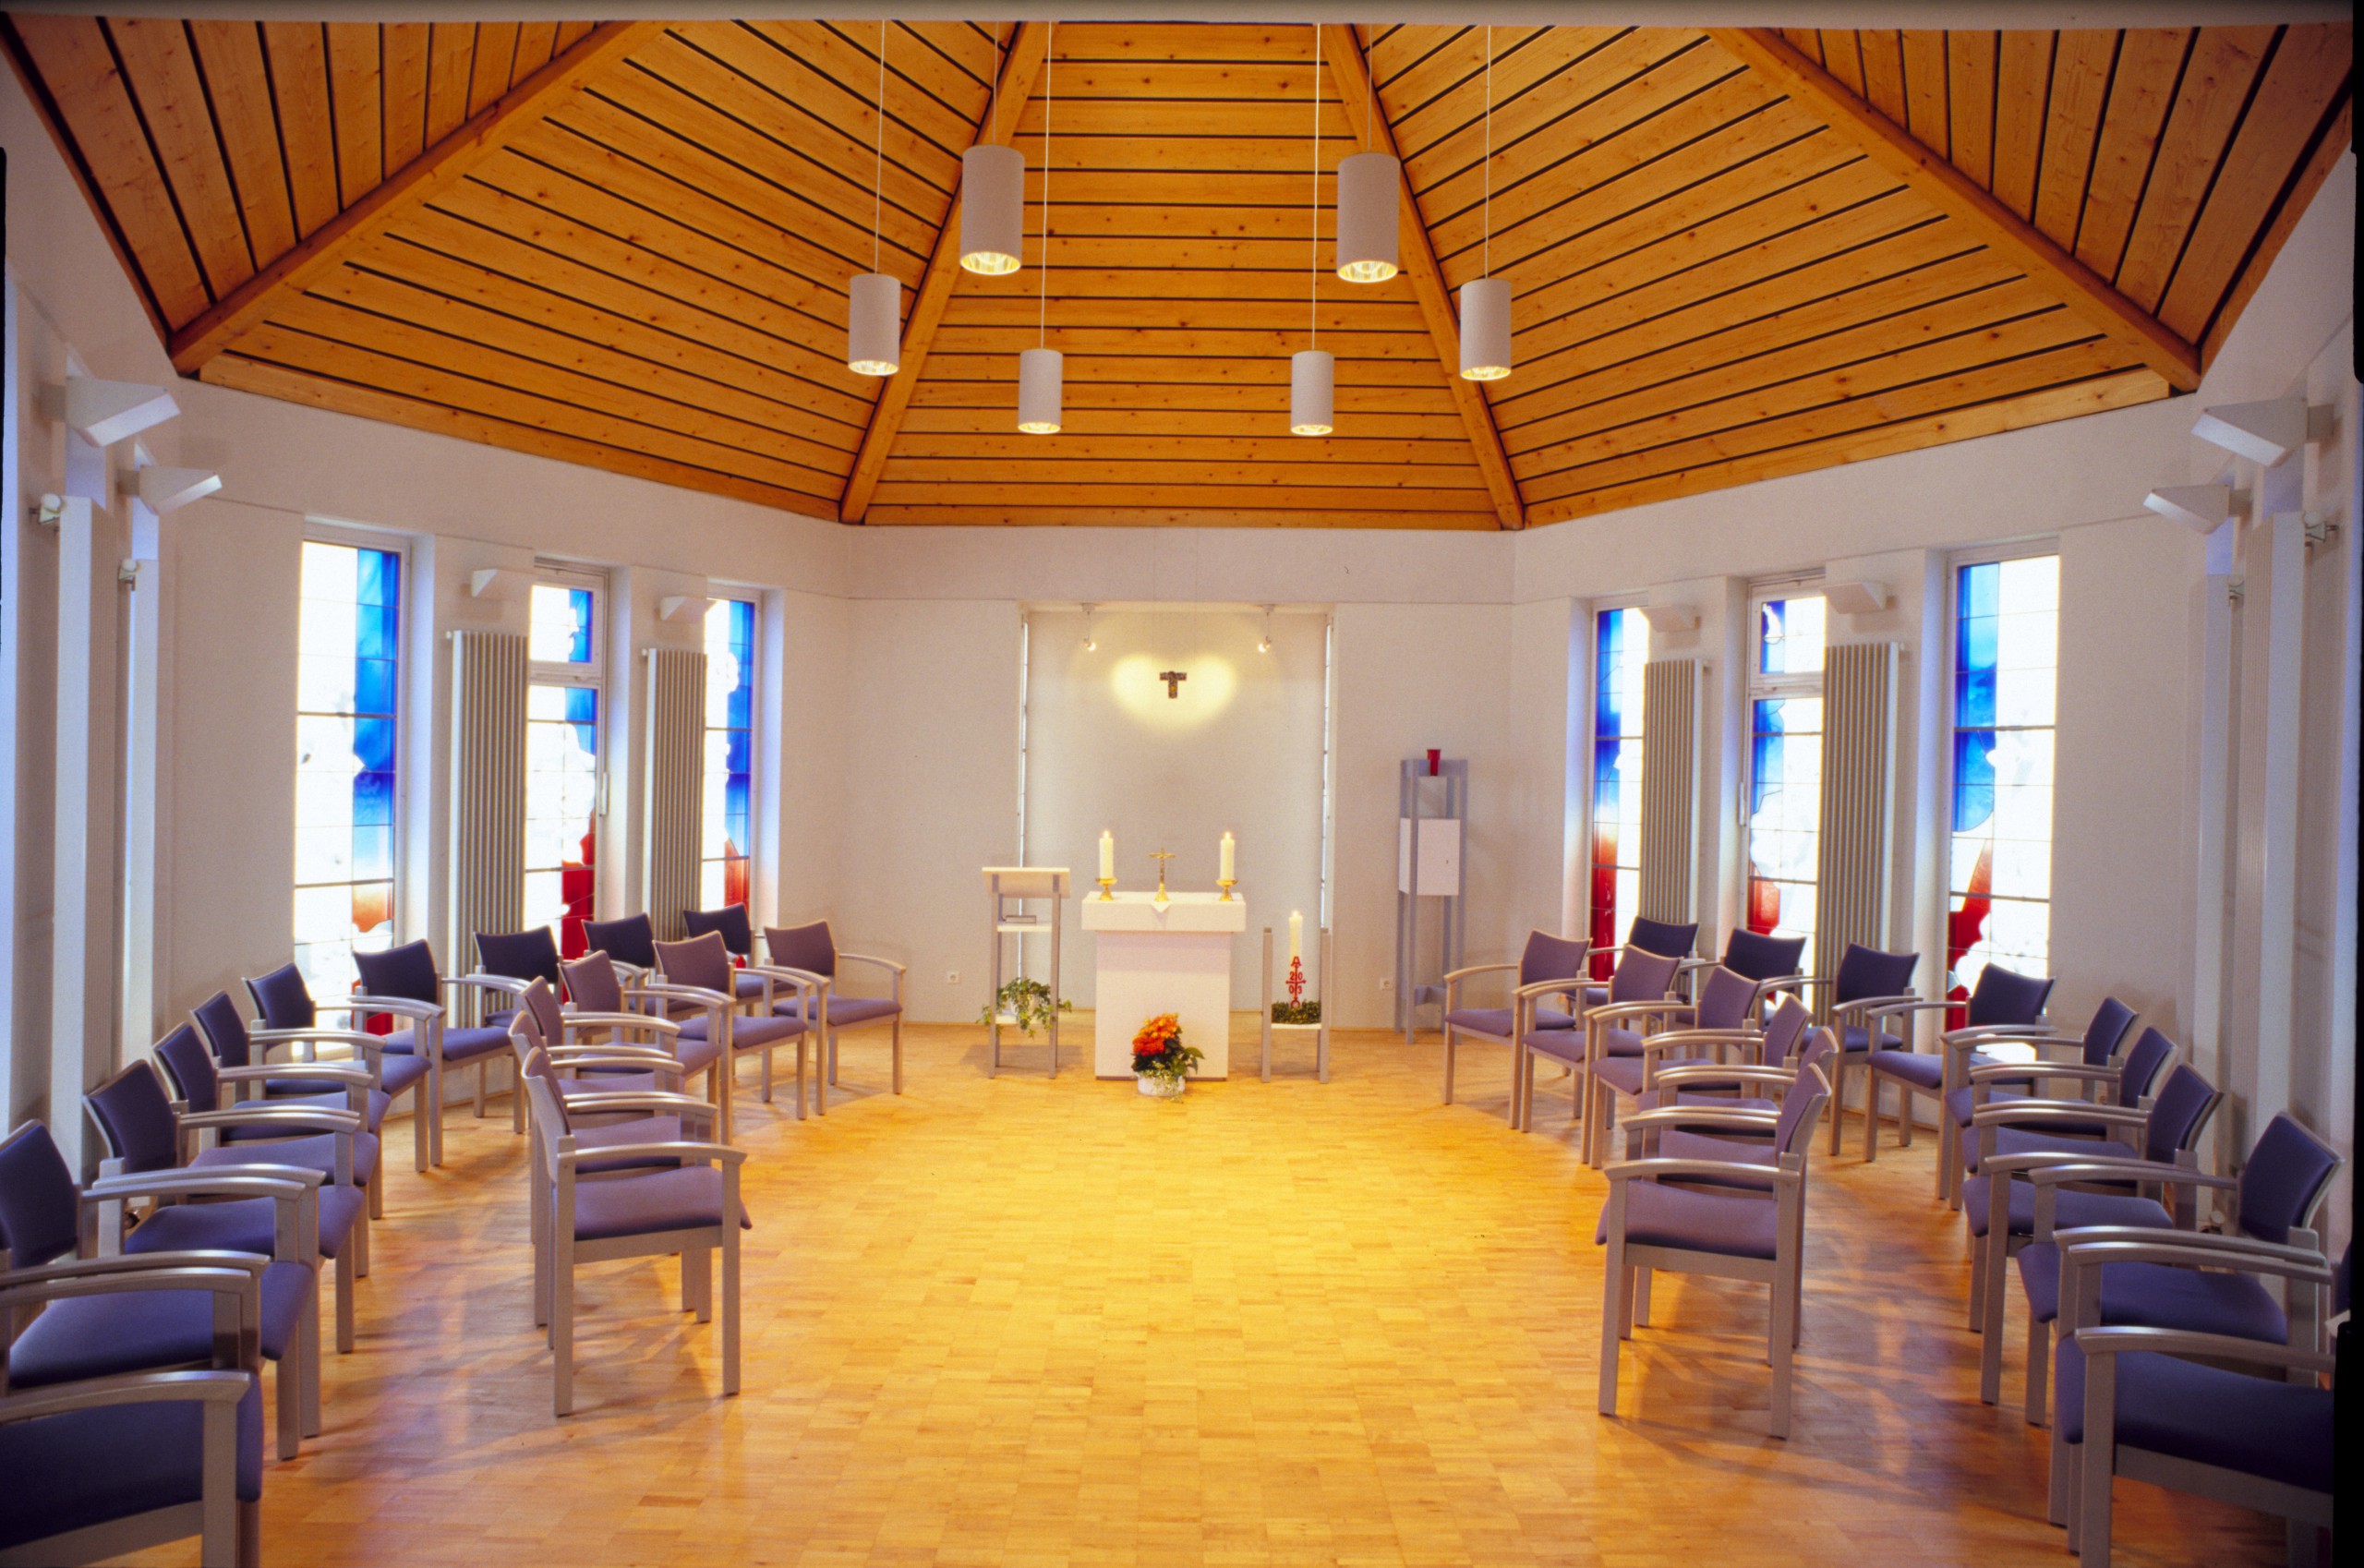 Eine Kapelle von innen mit Stuhlkreis und Altar in der Mitte